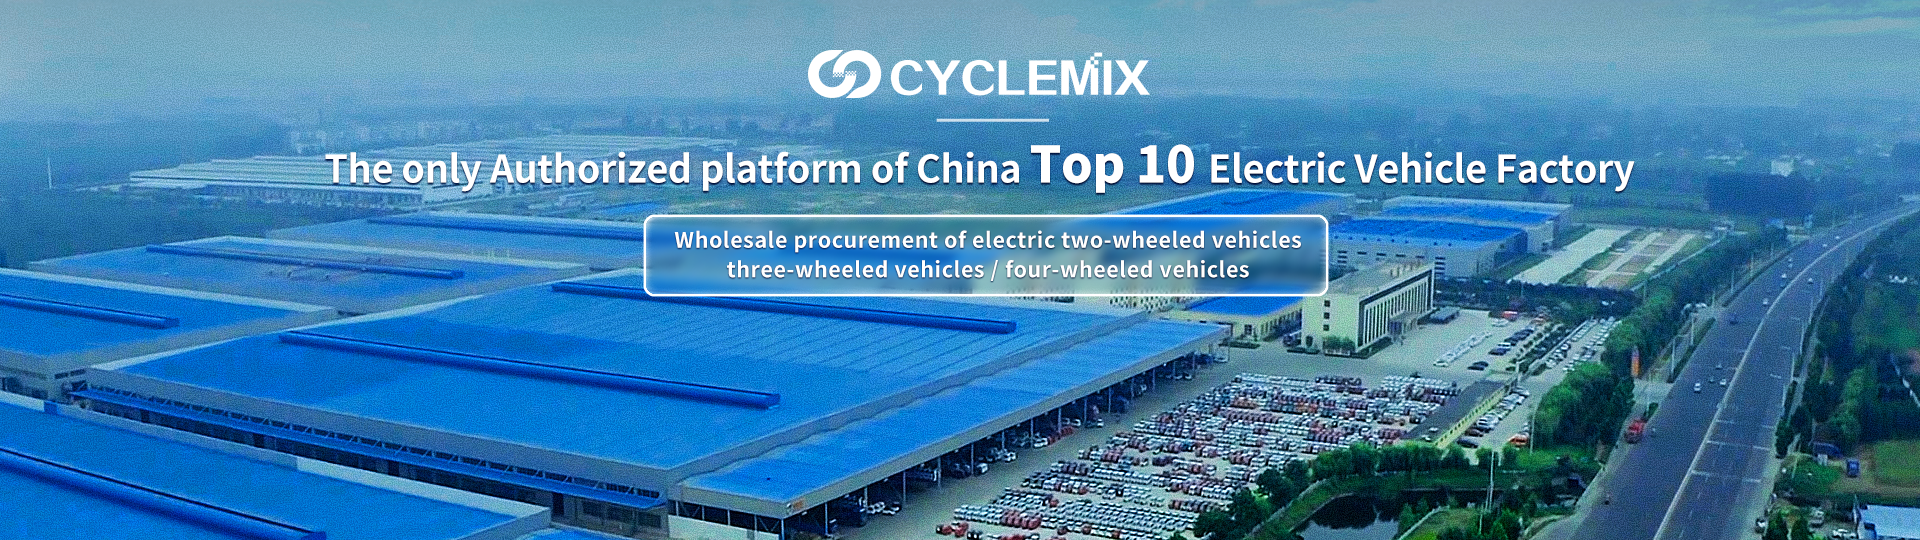 CYCLEMIX La seule partie/plateforme autorisée du Top 10 chinois des usines de véhicules électriques